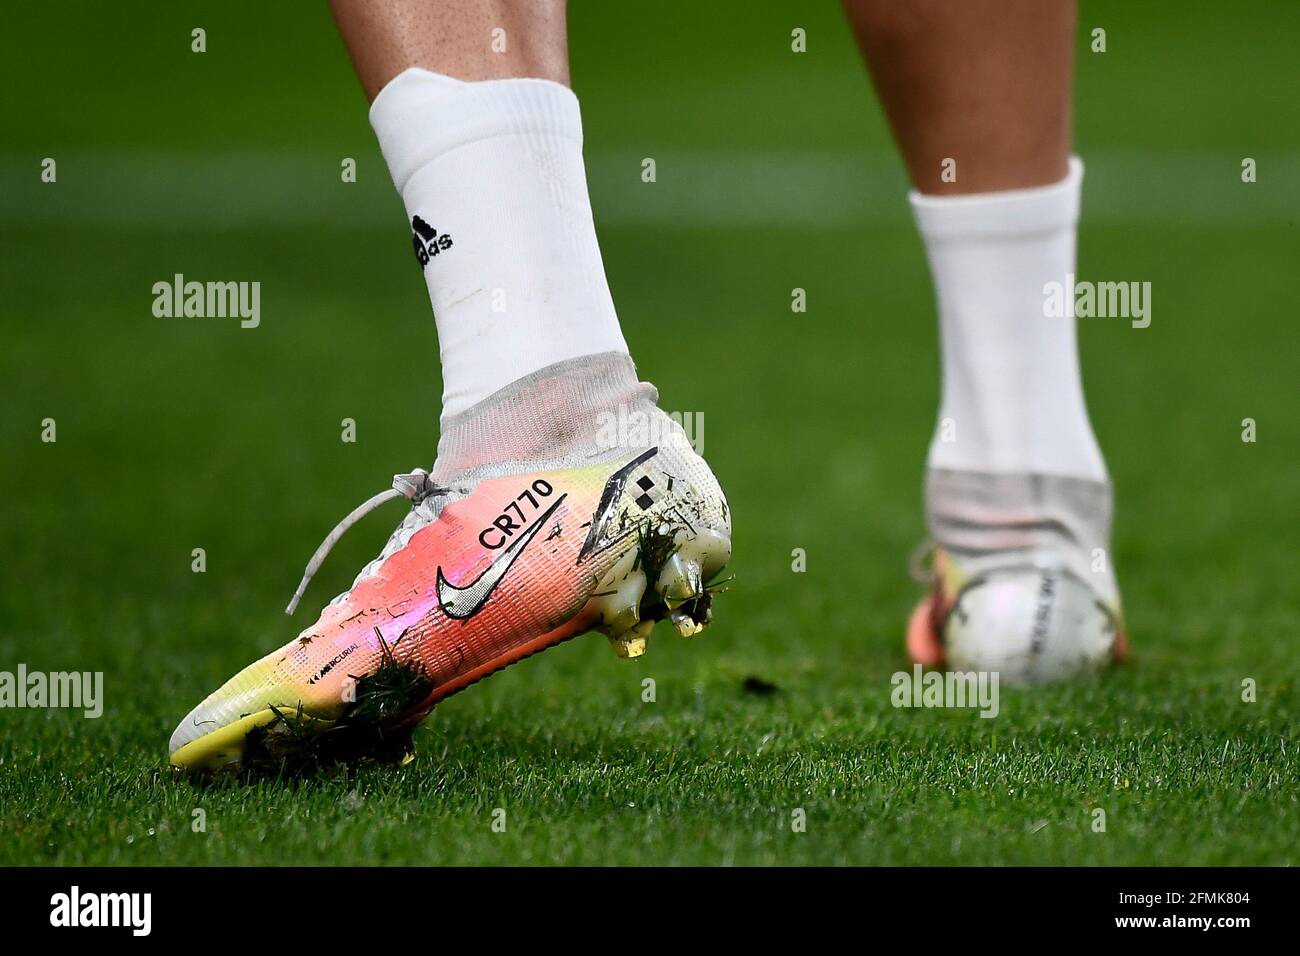 Turín, Italia. 09 de mayo de 2021. Las botas Nike Mercurial personalizadas  con la escritura 'CR770' de Cristiano Ronaldo de Juventus FC se ven durante  el calentamiento antes del partido de fútbol